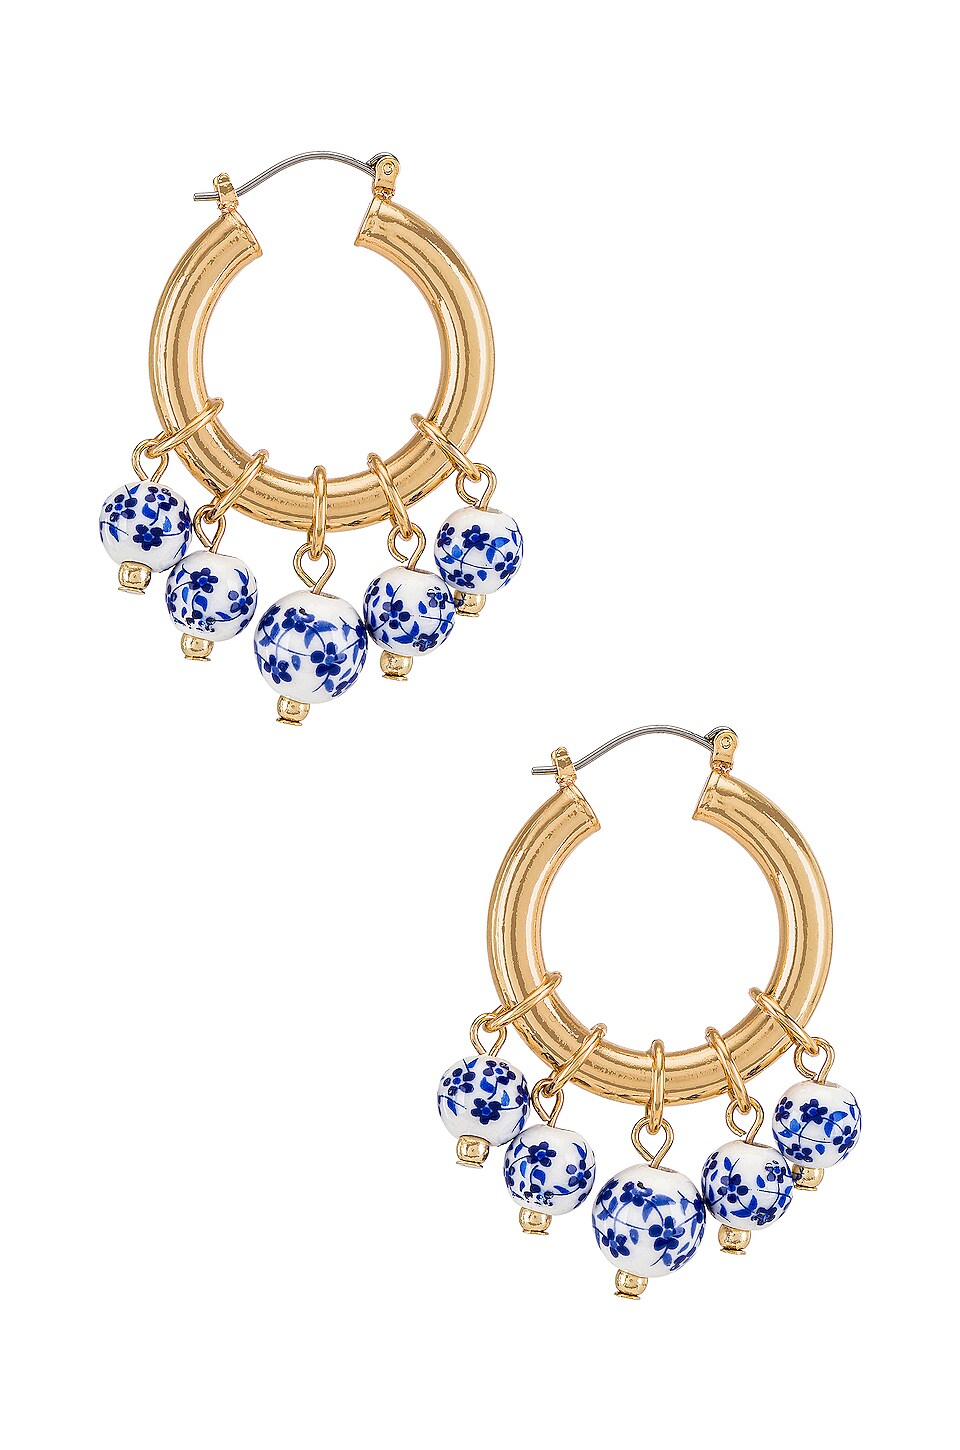 Revolve Accessories Jewelry Earrings Hoop Blooming Hoop Earring in Baby Blue. 